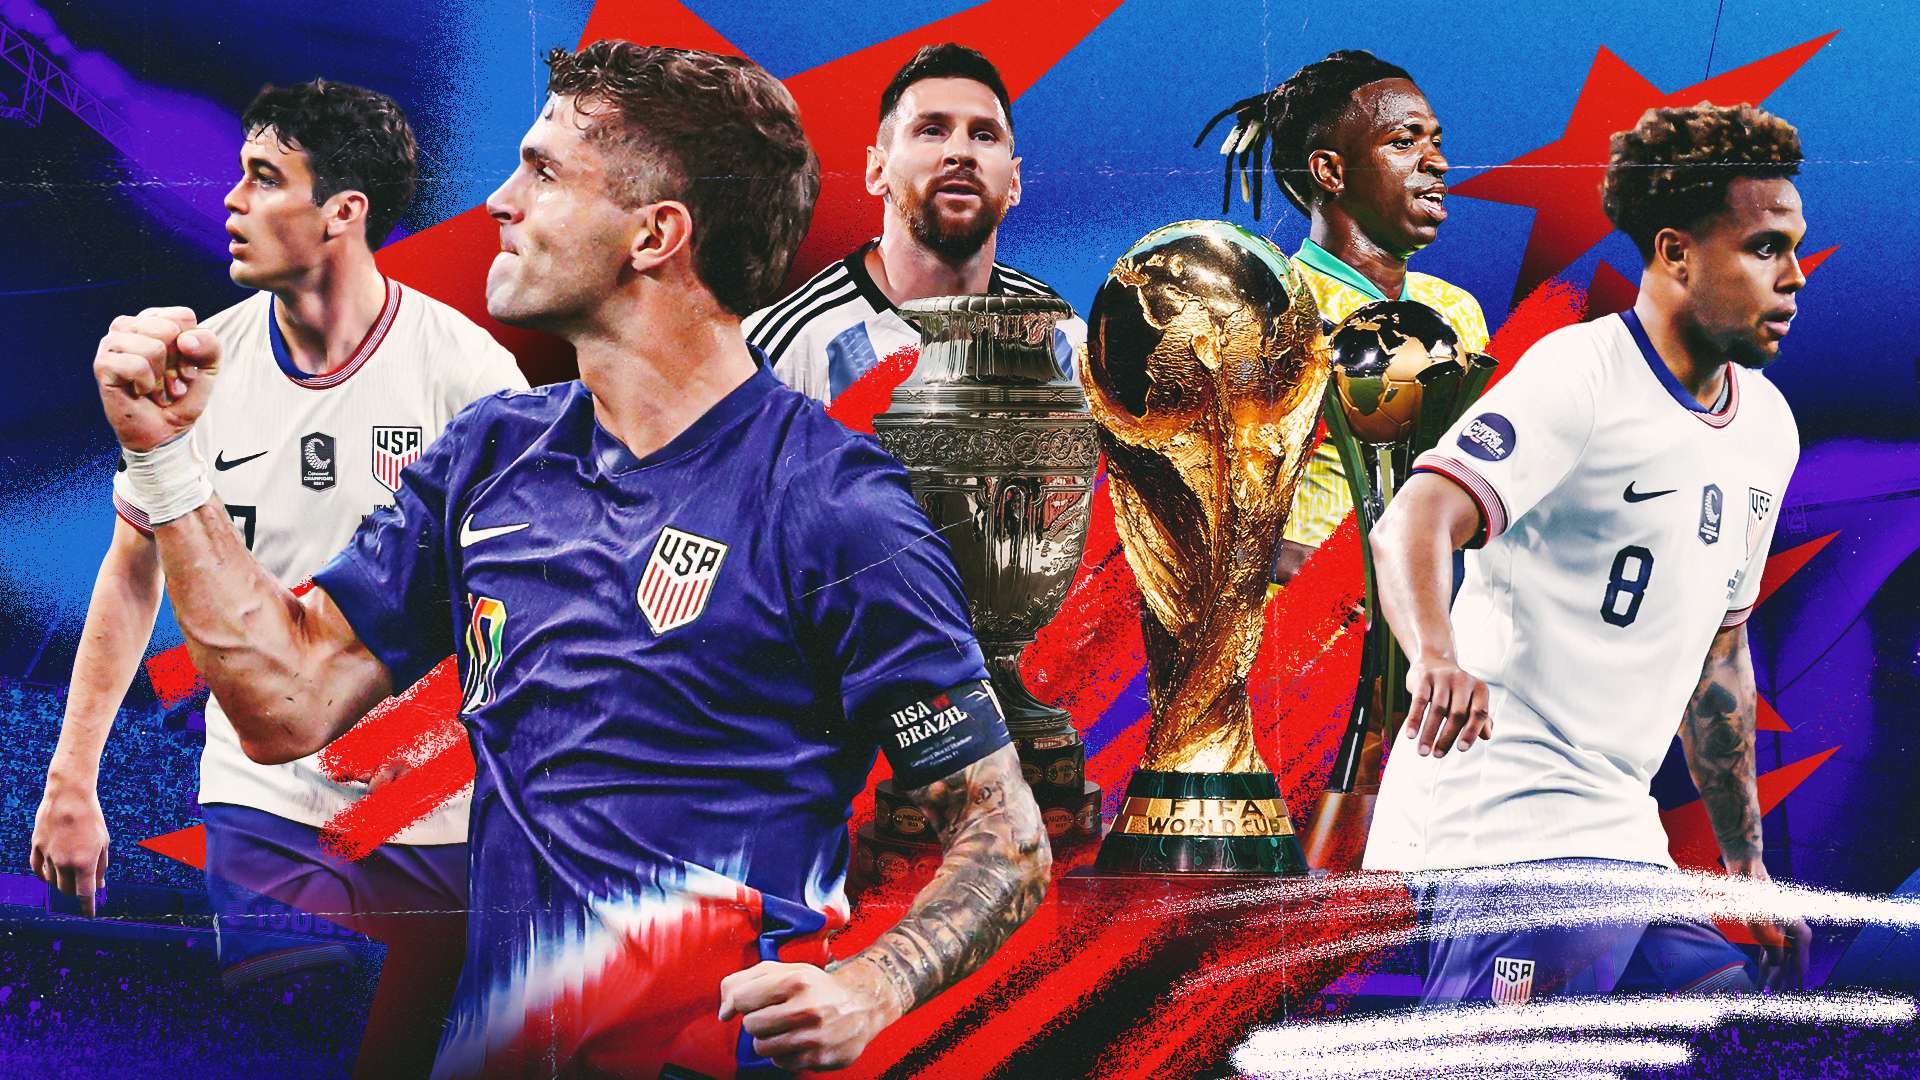 Copa America U.S. Soccer takeover